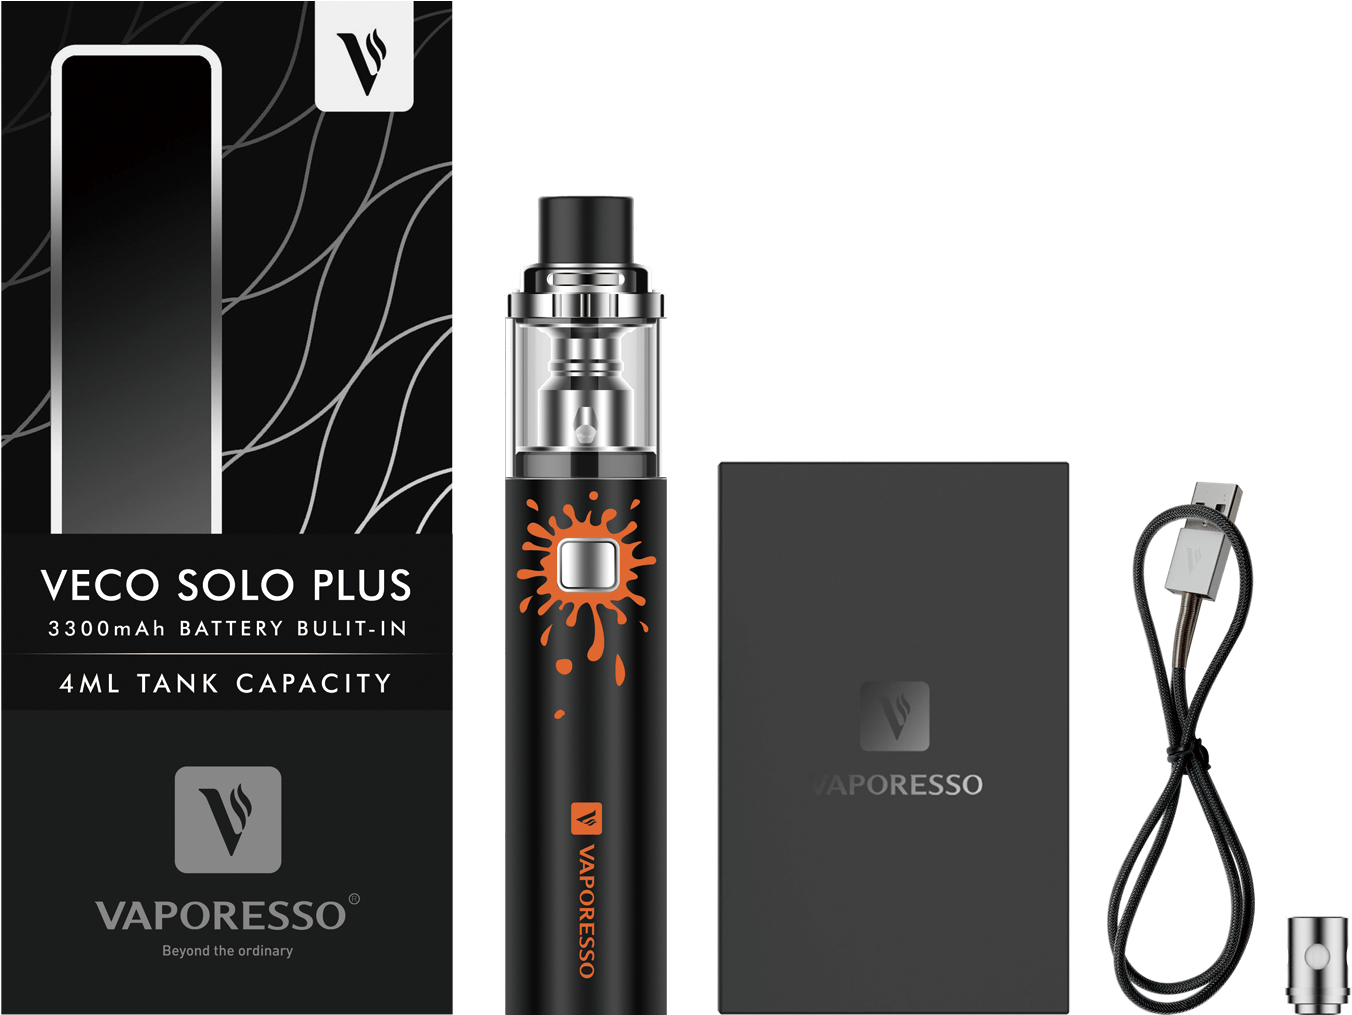 Veco Solo Plus Package - Vaporesso Veco Solo Plus Clipart (1509x1056), Png Download